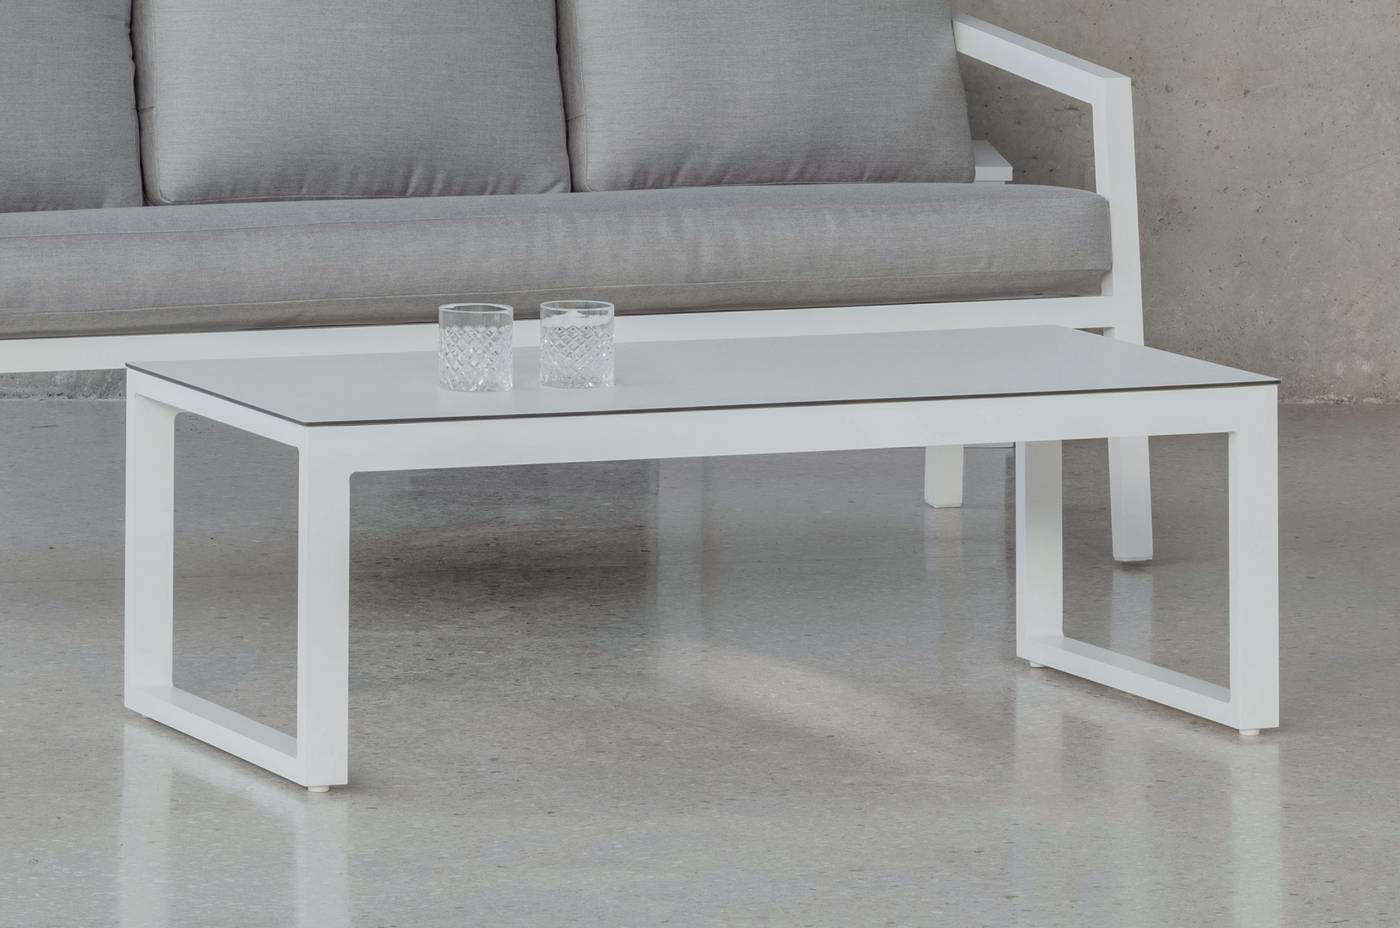 Mesa de centro rectangular de aluminio con tapa HPL de 120 cm. Disponible en color blanco, plata, marrón, champagne o antracita.